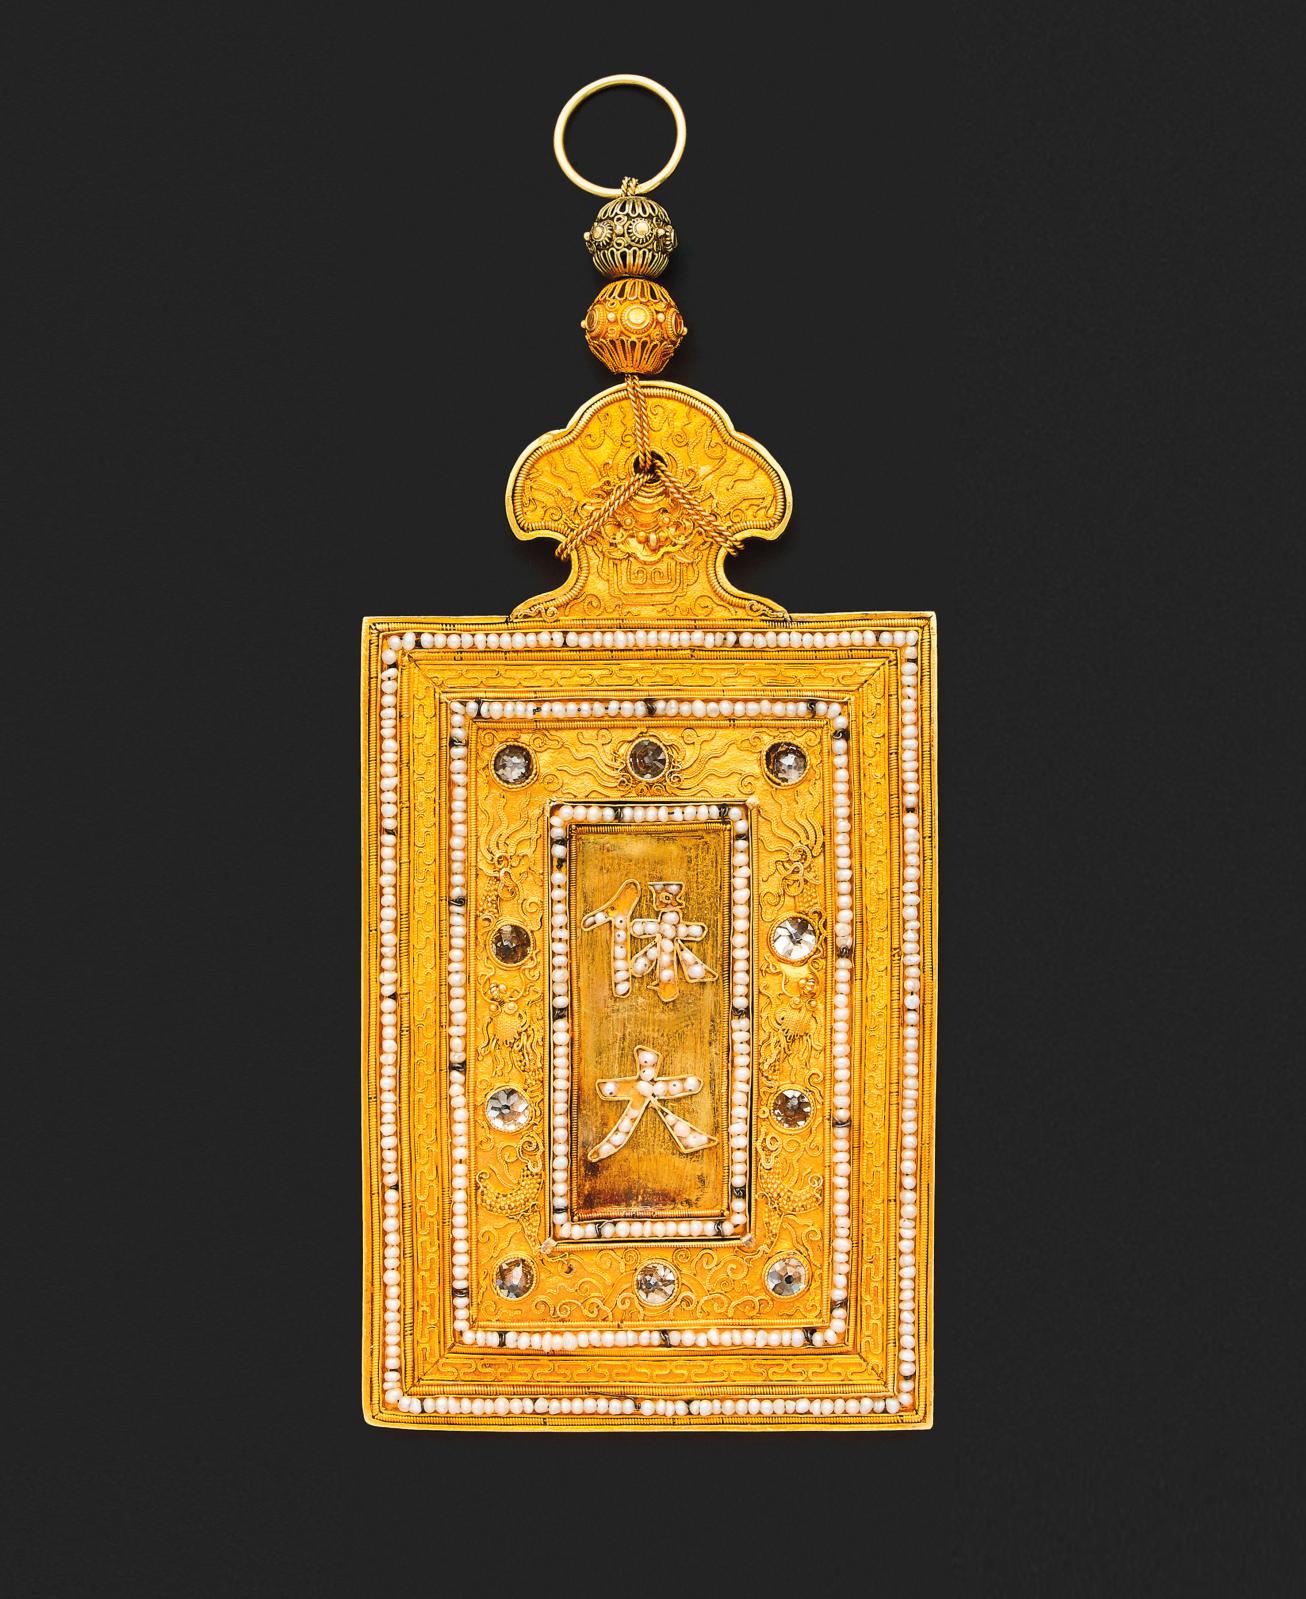 Une collection de décorations vietnamiennes représentant les 13 empereurs de la dynastie Nguyen